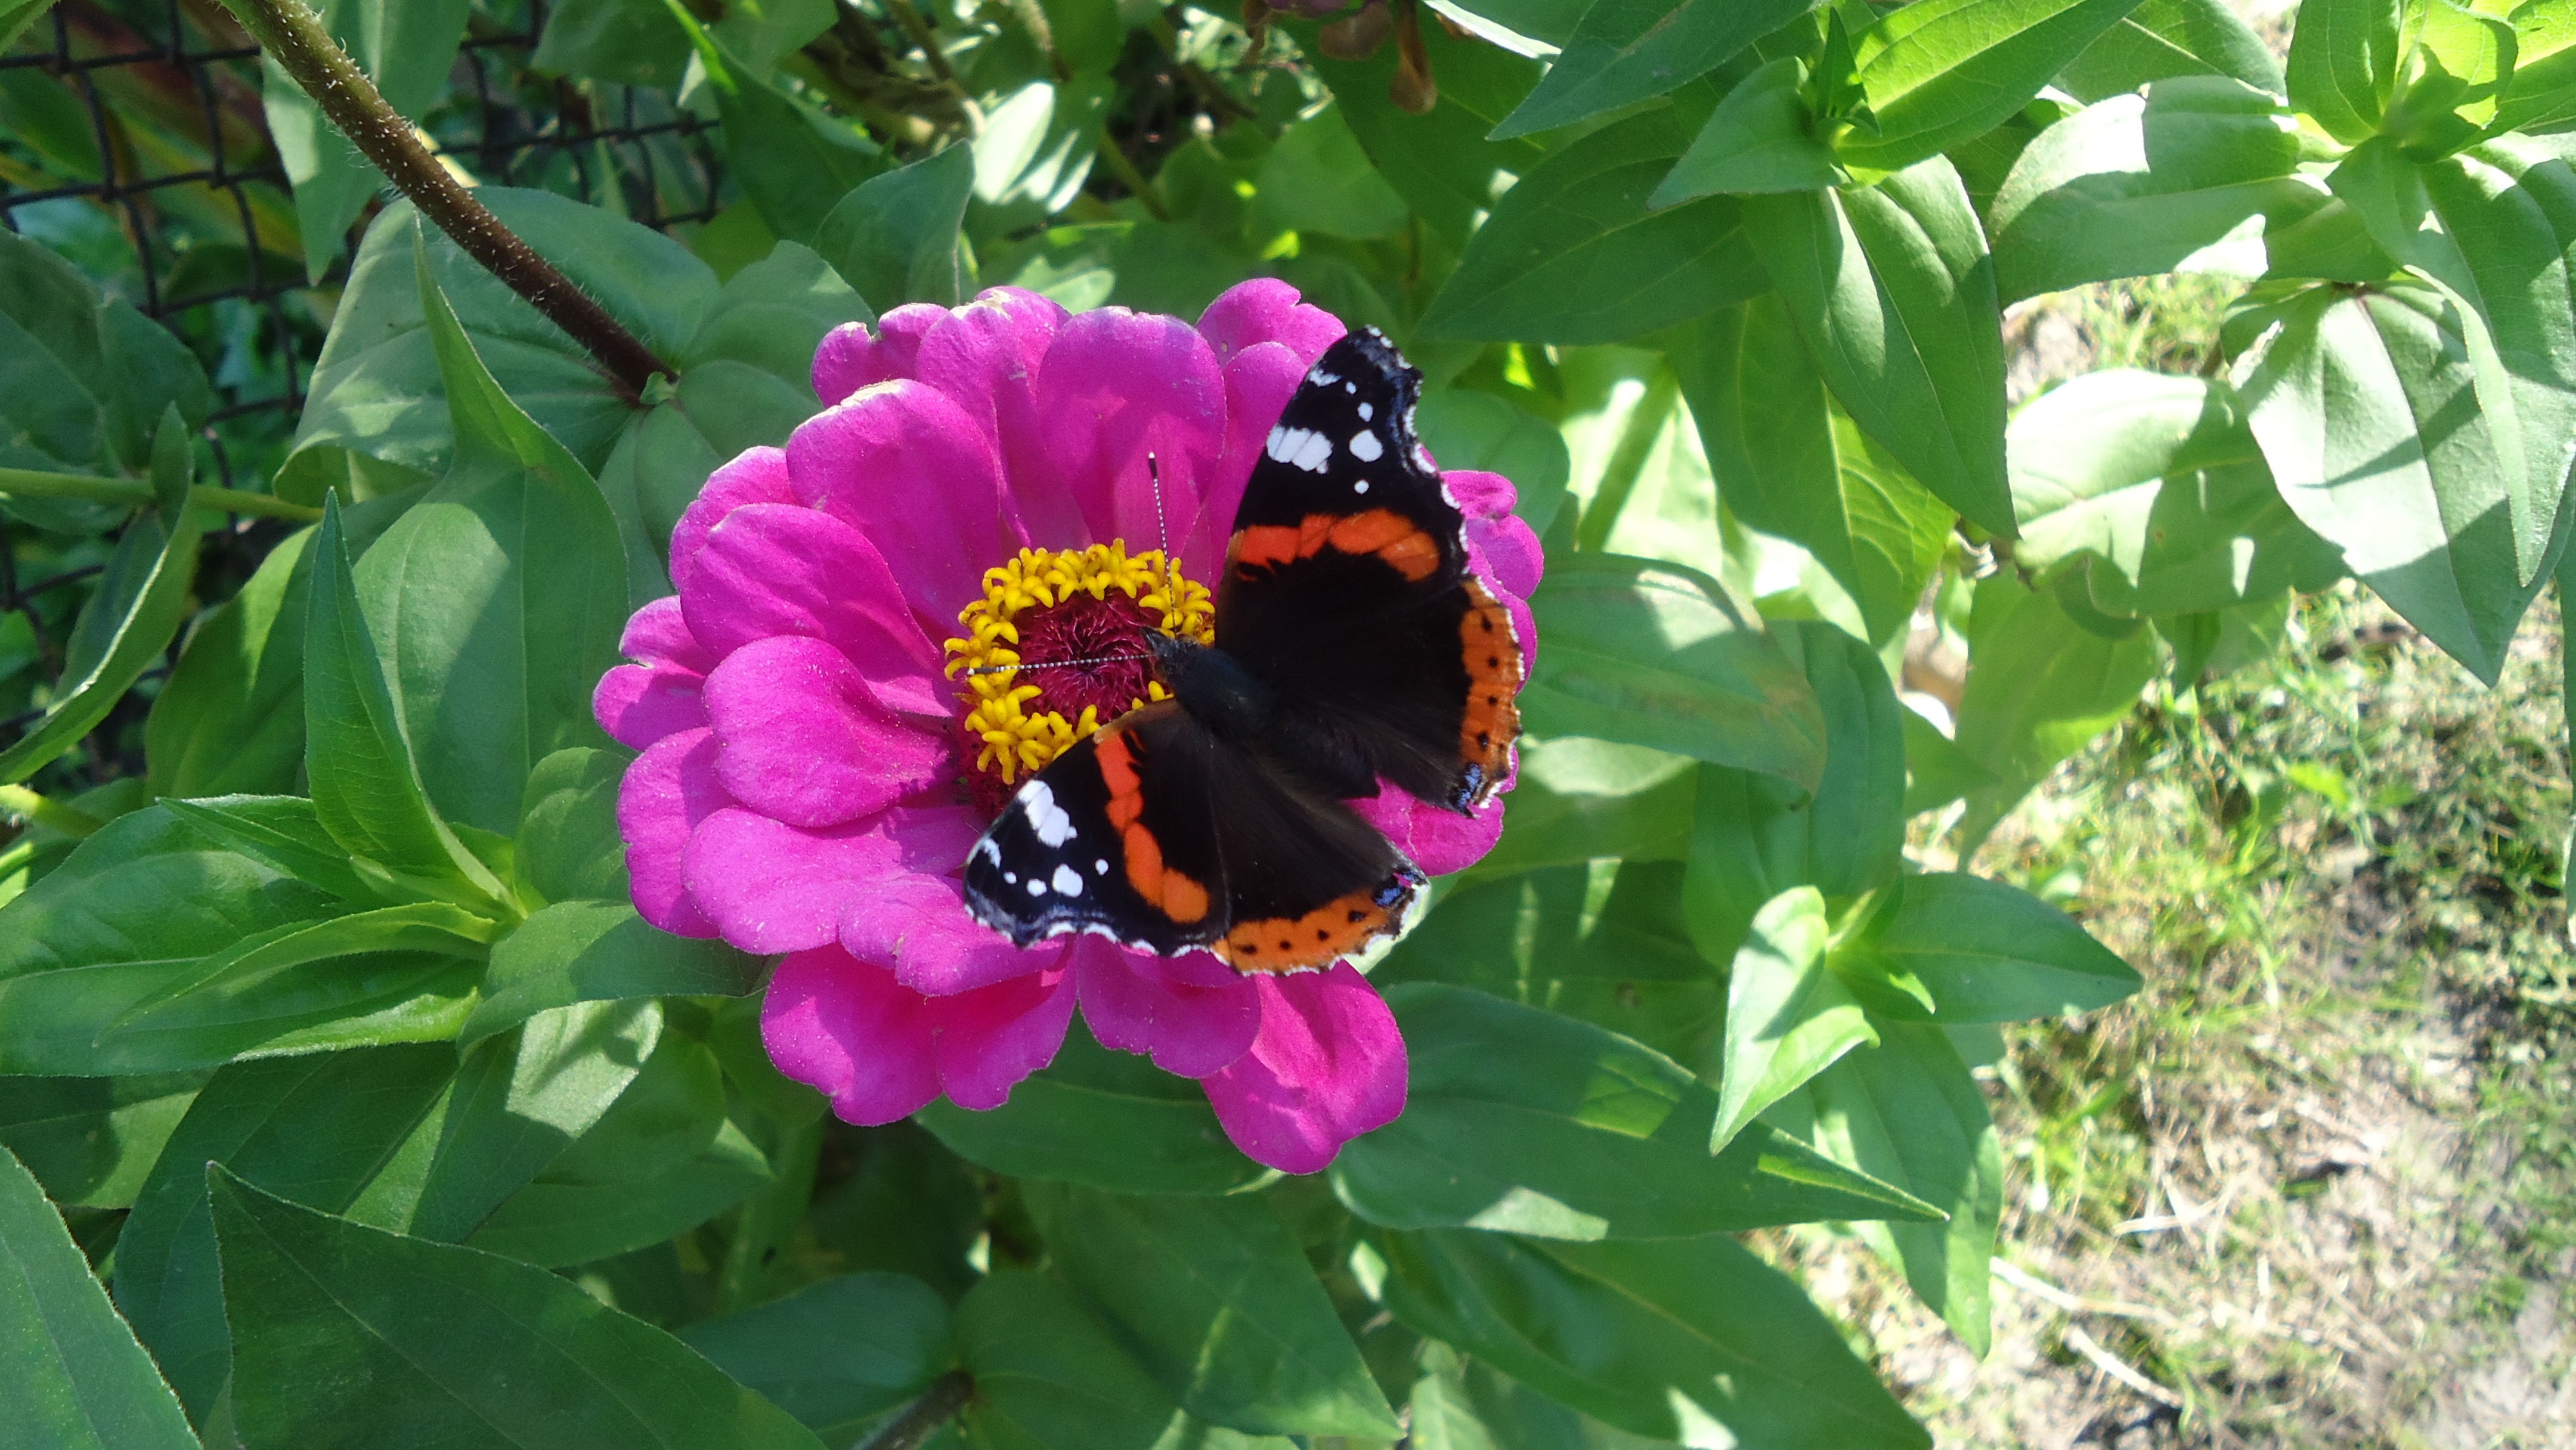 138141 Заставки и Обои Лето на телефон. Скачать цветок, животные, бабочка картинки бесплатно